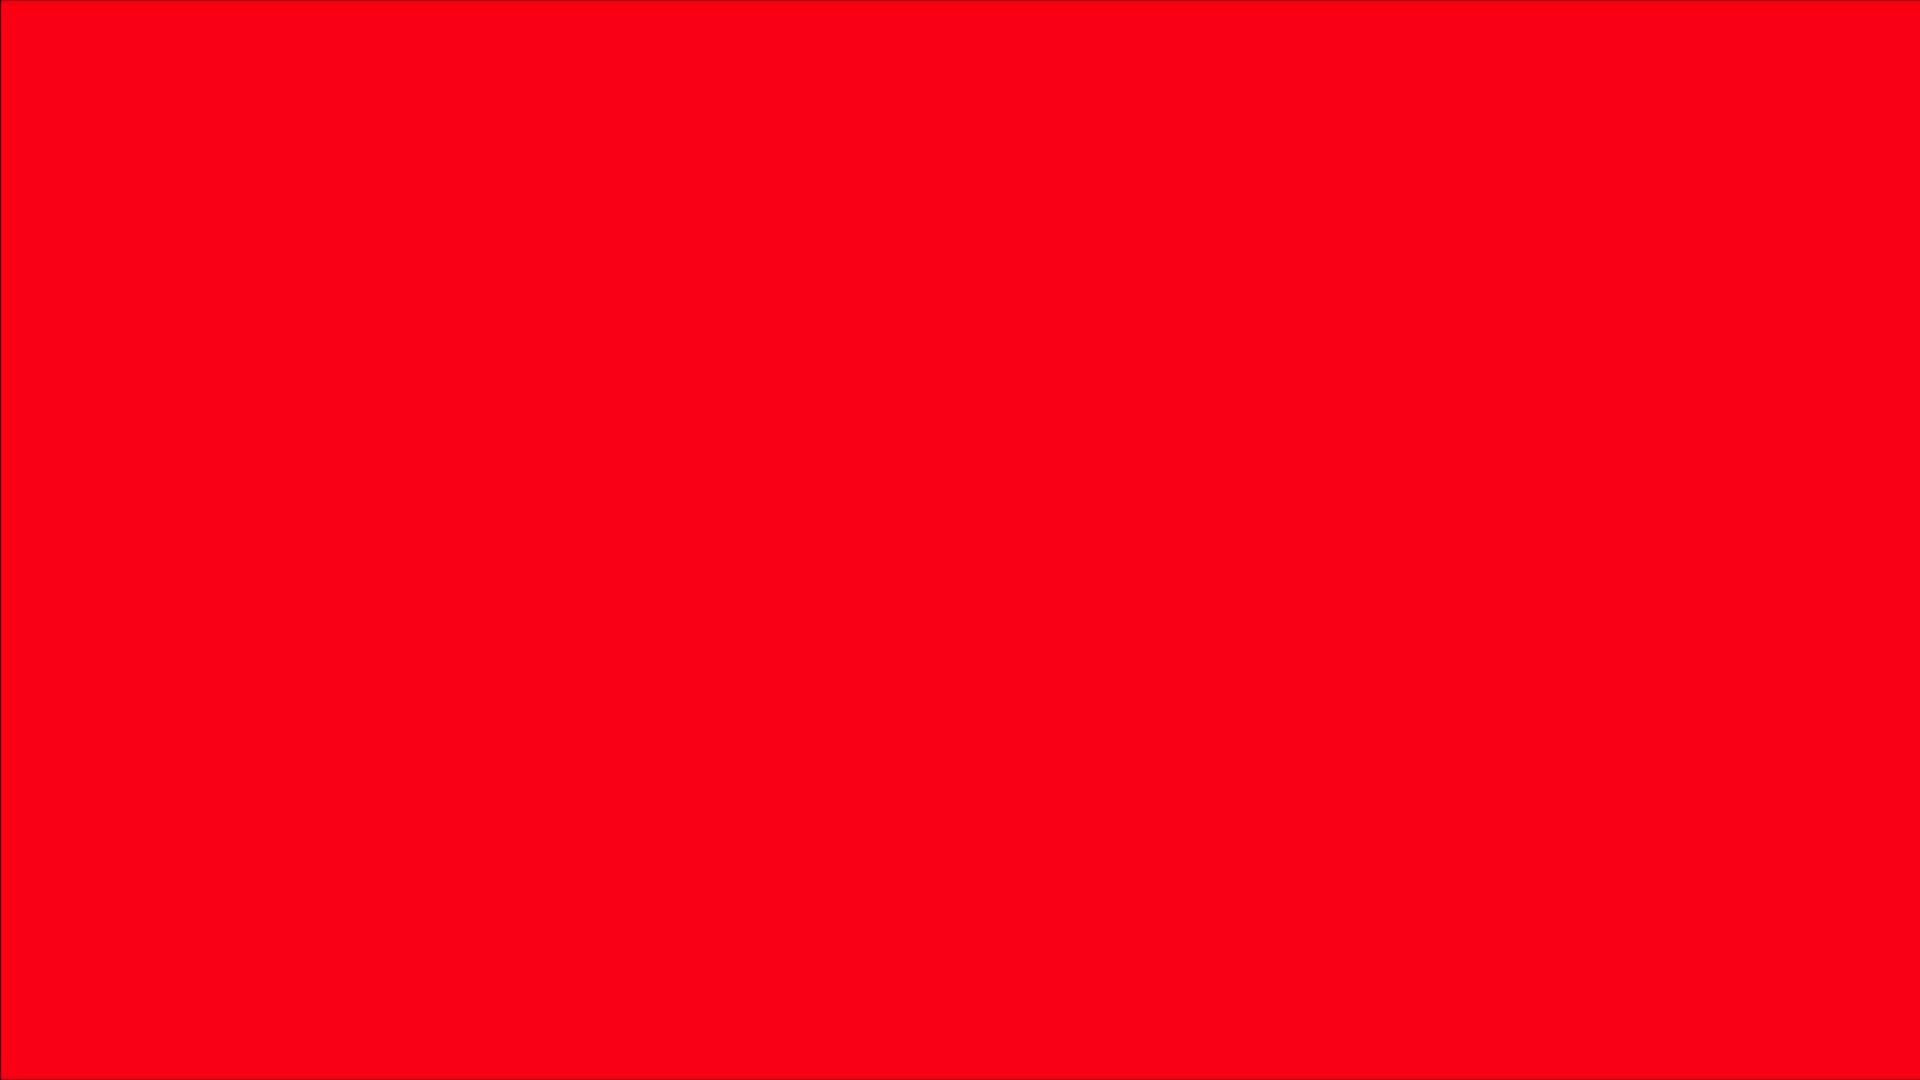 Hình nền đẹp màu đỏ giúp tăng cường trải nghiệm trực quan khi sử dụng máy tính hoặc điện thoại của bạn. Với những hình ảnh nền màu đỏ độc đáo và bắt mắt, bạn có thể trang trí cho màn hình của mình trở nên sang trọng và nghệ thuật hơn.